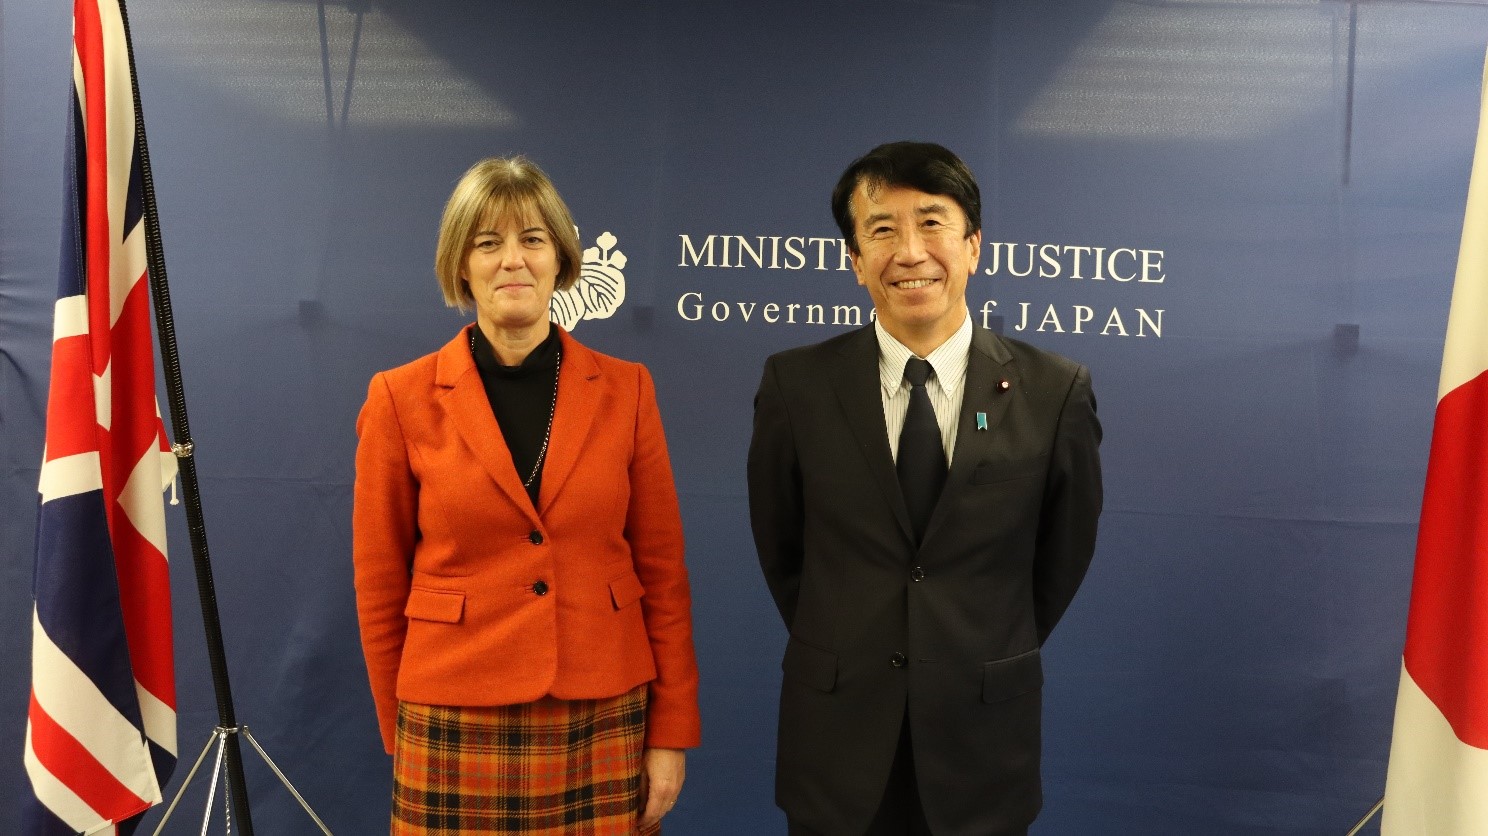 齋藤健法務大臣が駐日英国大使による表敬訪問を受けました。